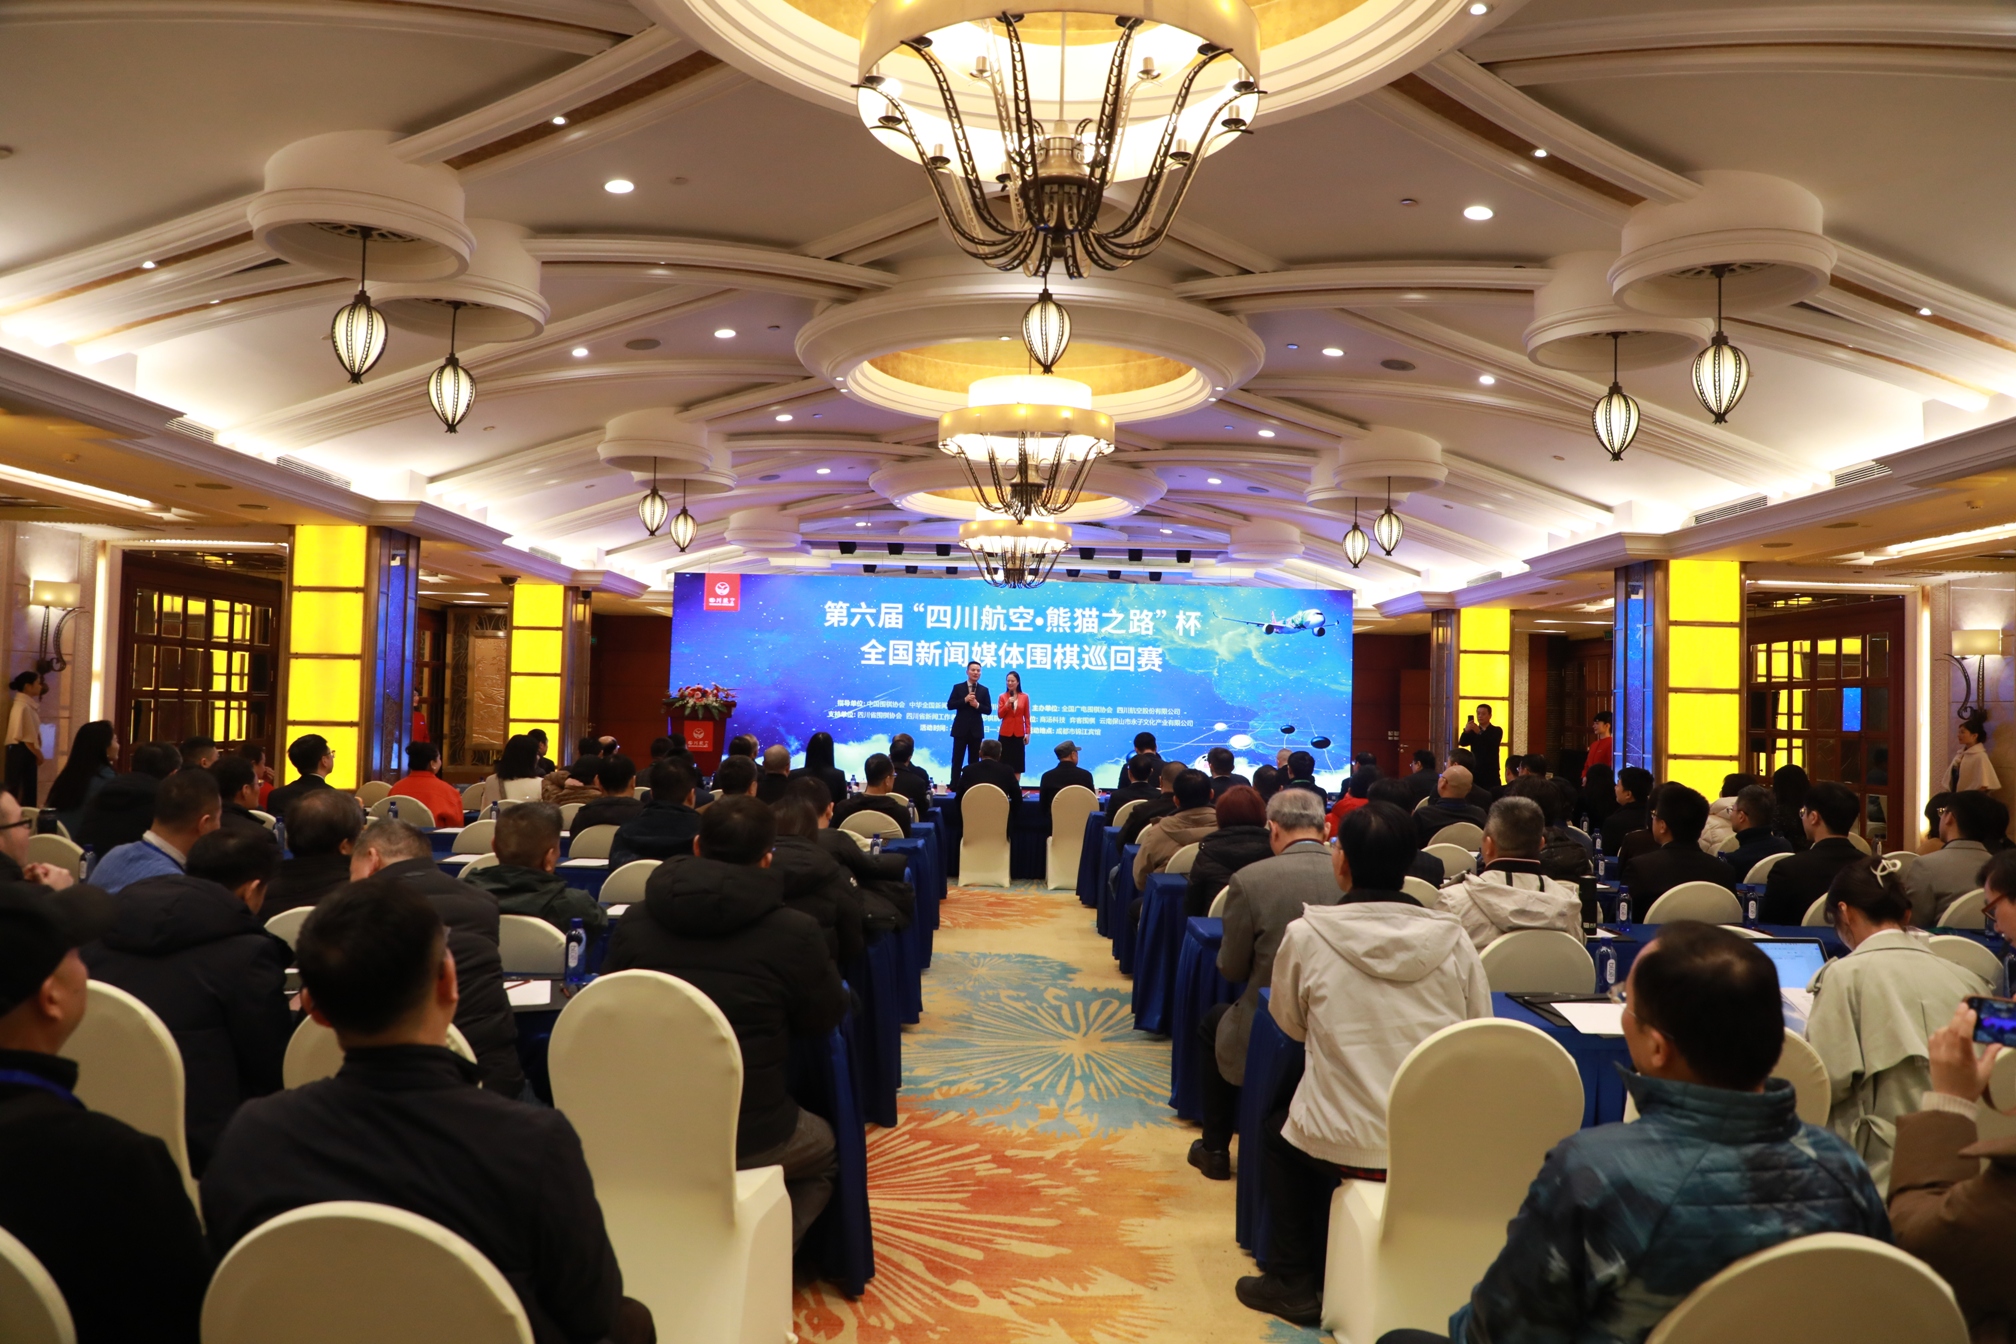 第六届 “四川航空 熊猫之路”杯全国新闻媒体围棋巡回赛在蓉开赛